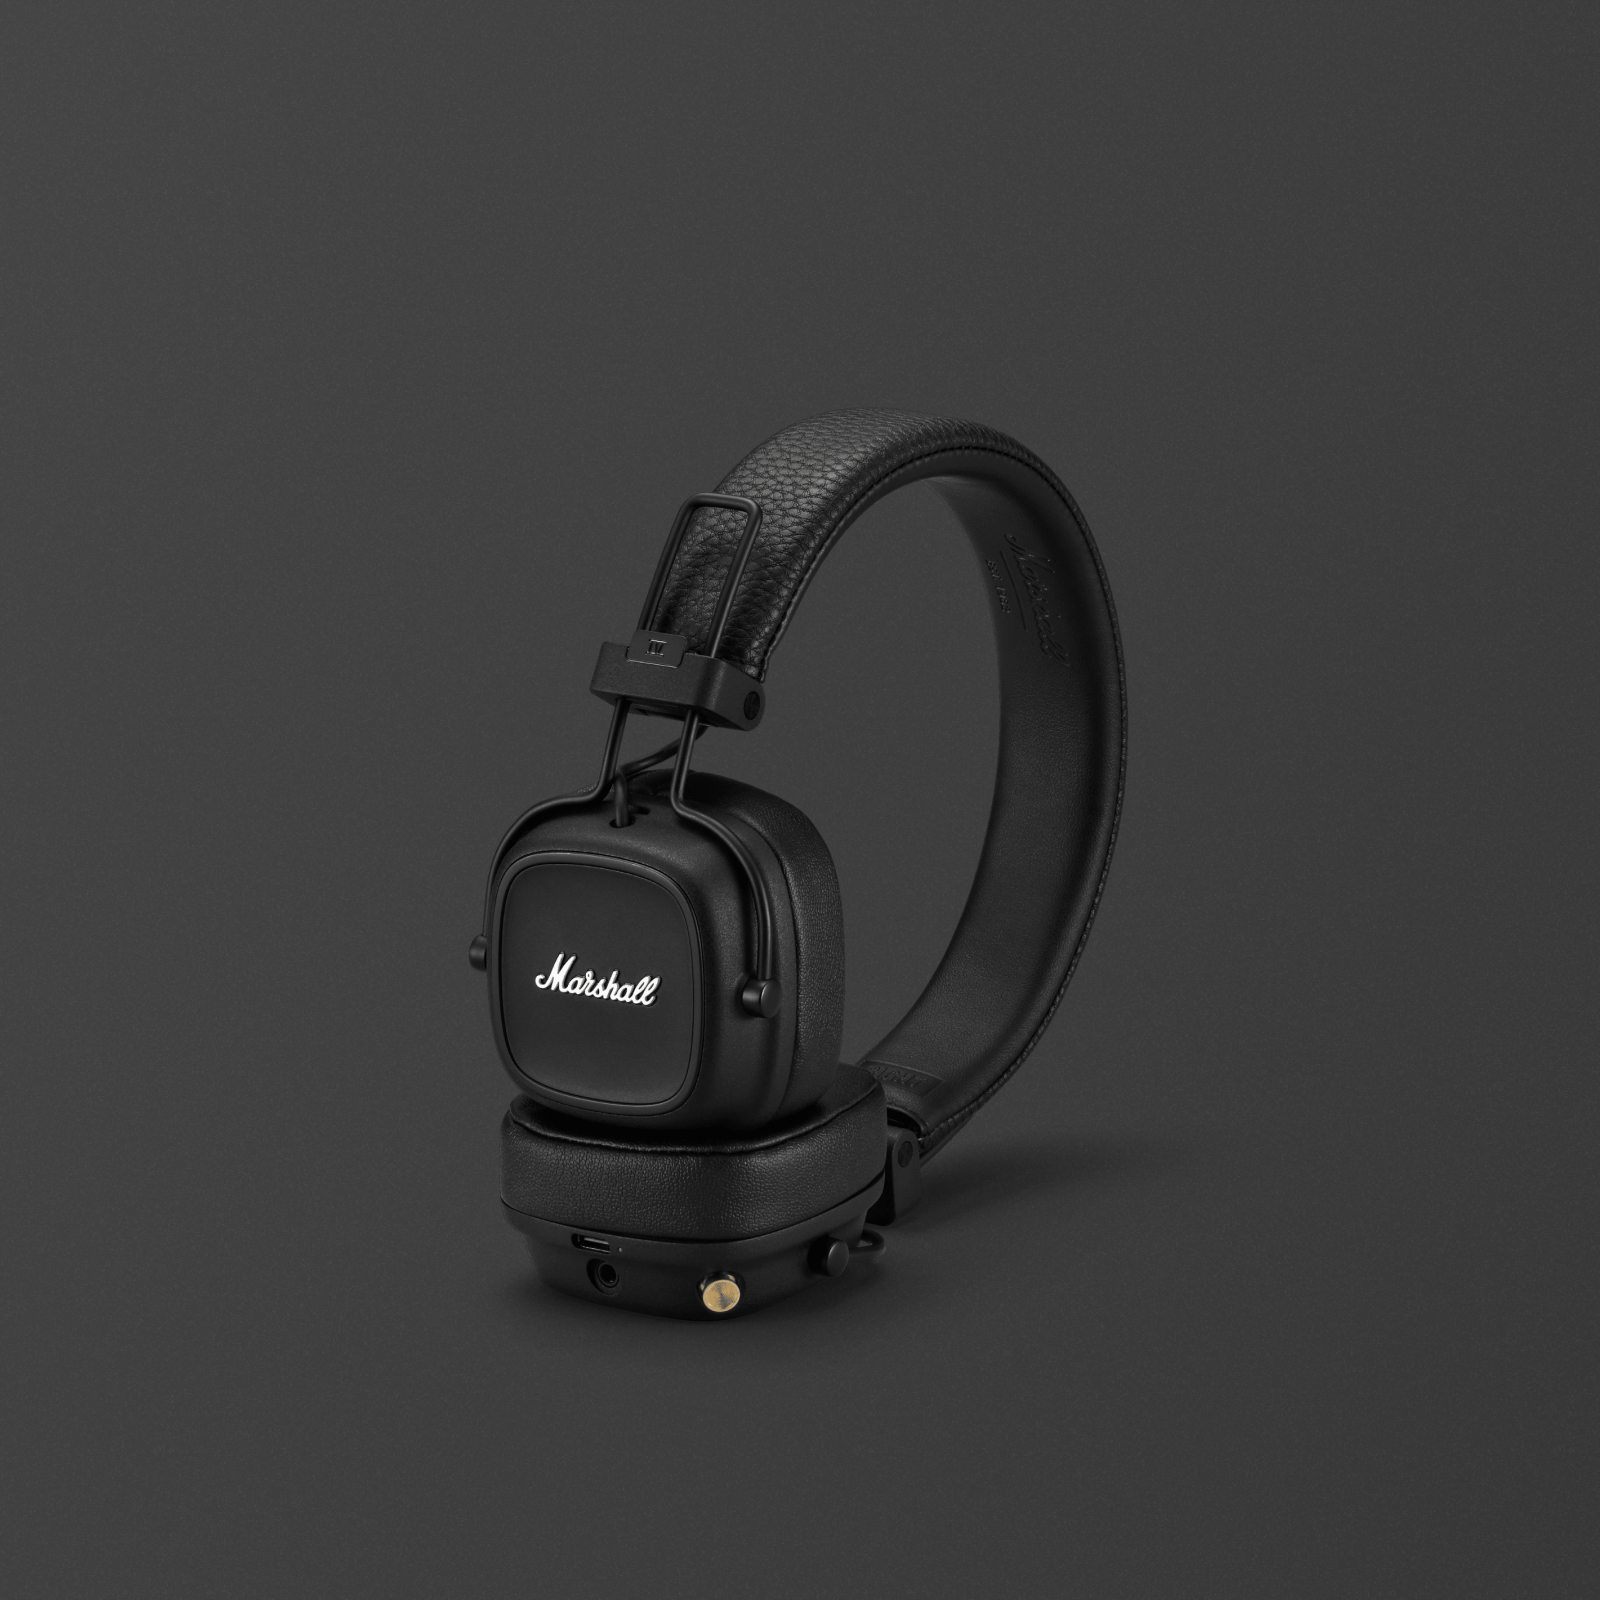 Marshall MAJOR IV BLACK headphones on a black background.